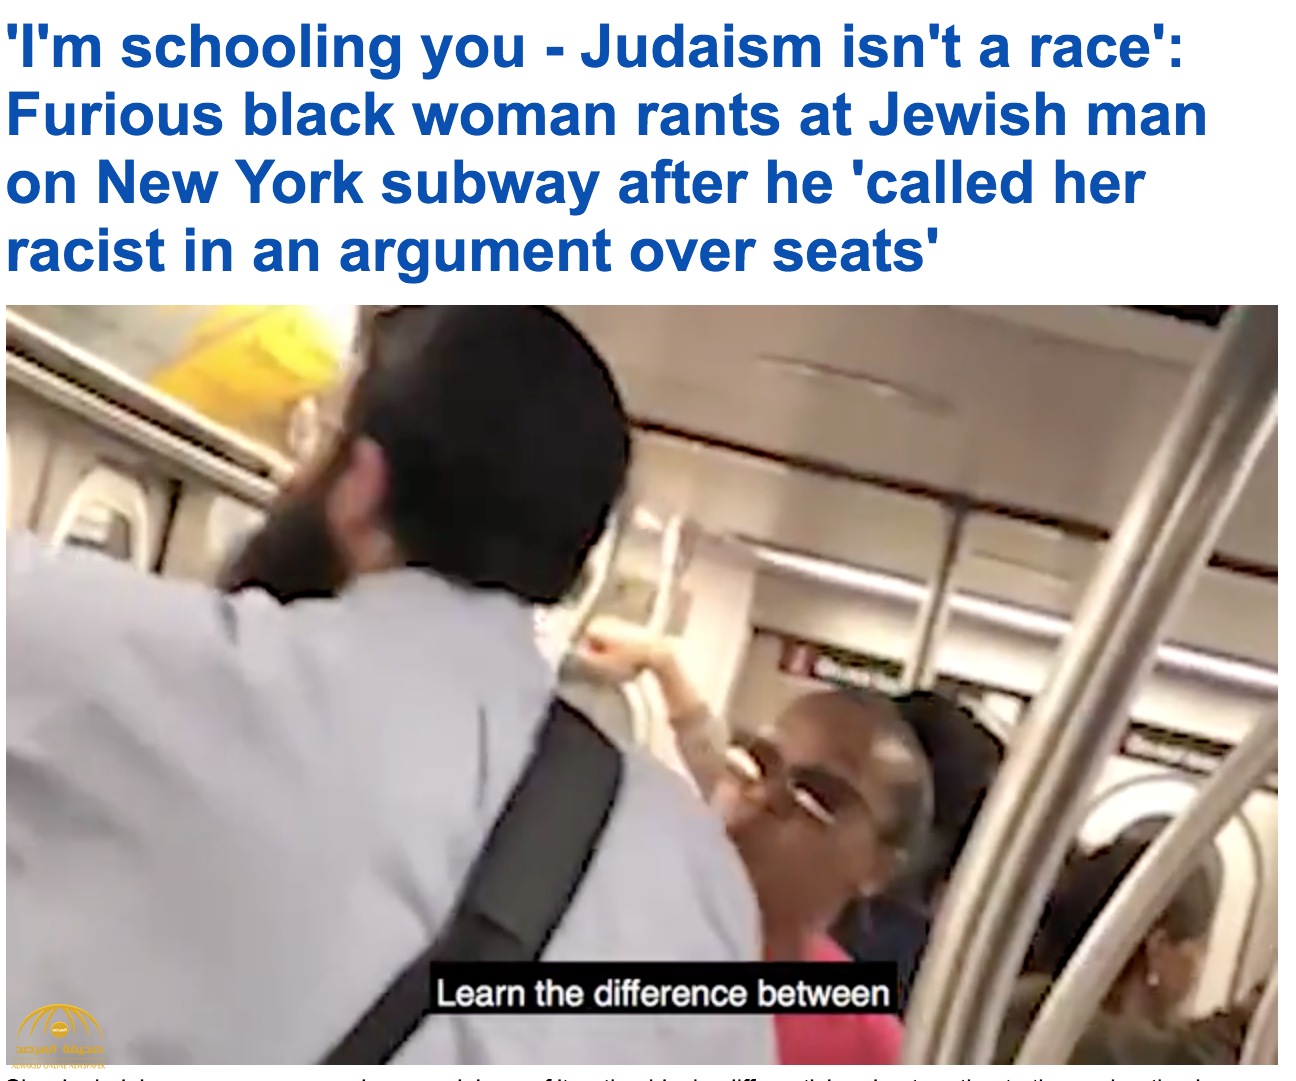 بعدما وصفها بالعنصرية.. شاهد امرأة سوداء تشتم يهودي داخل مترو أنفاق مزدحم في نيويورك